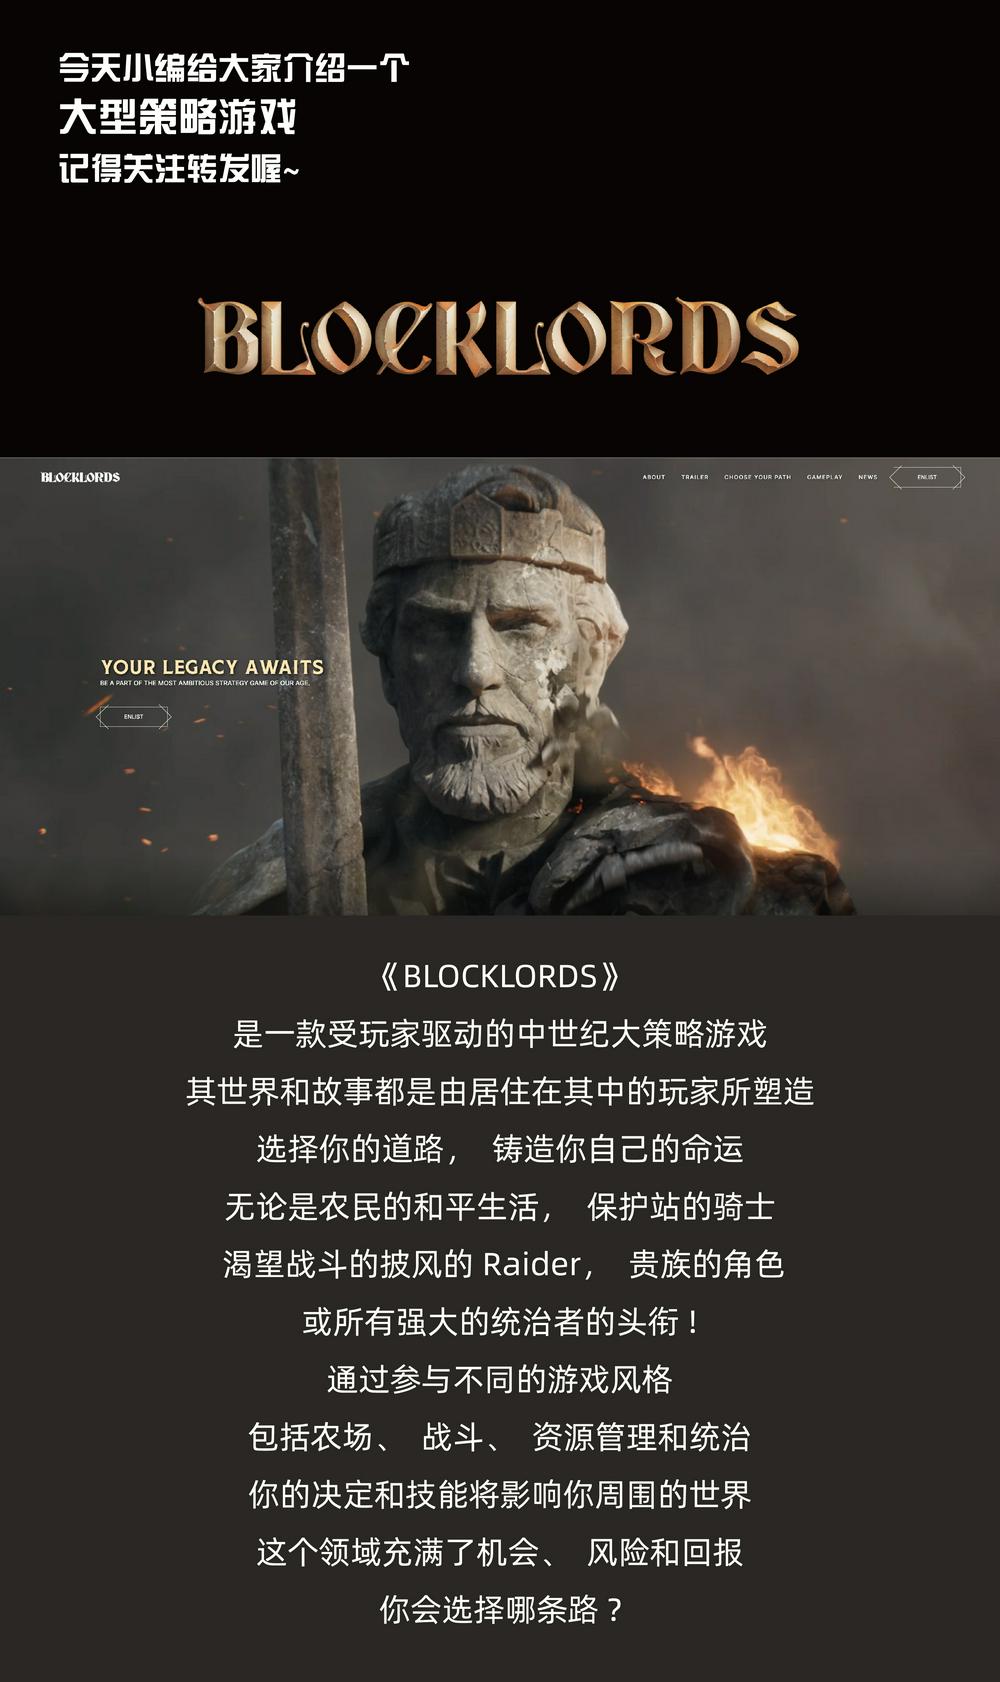  【链游攻略】一款受玩家驱动的中世纪大策略游戏——BLOCK